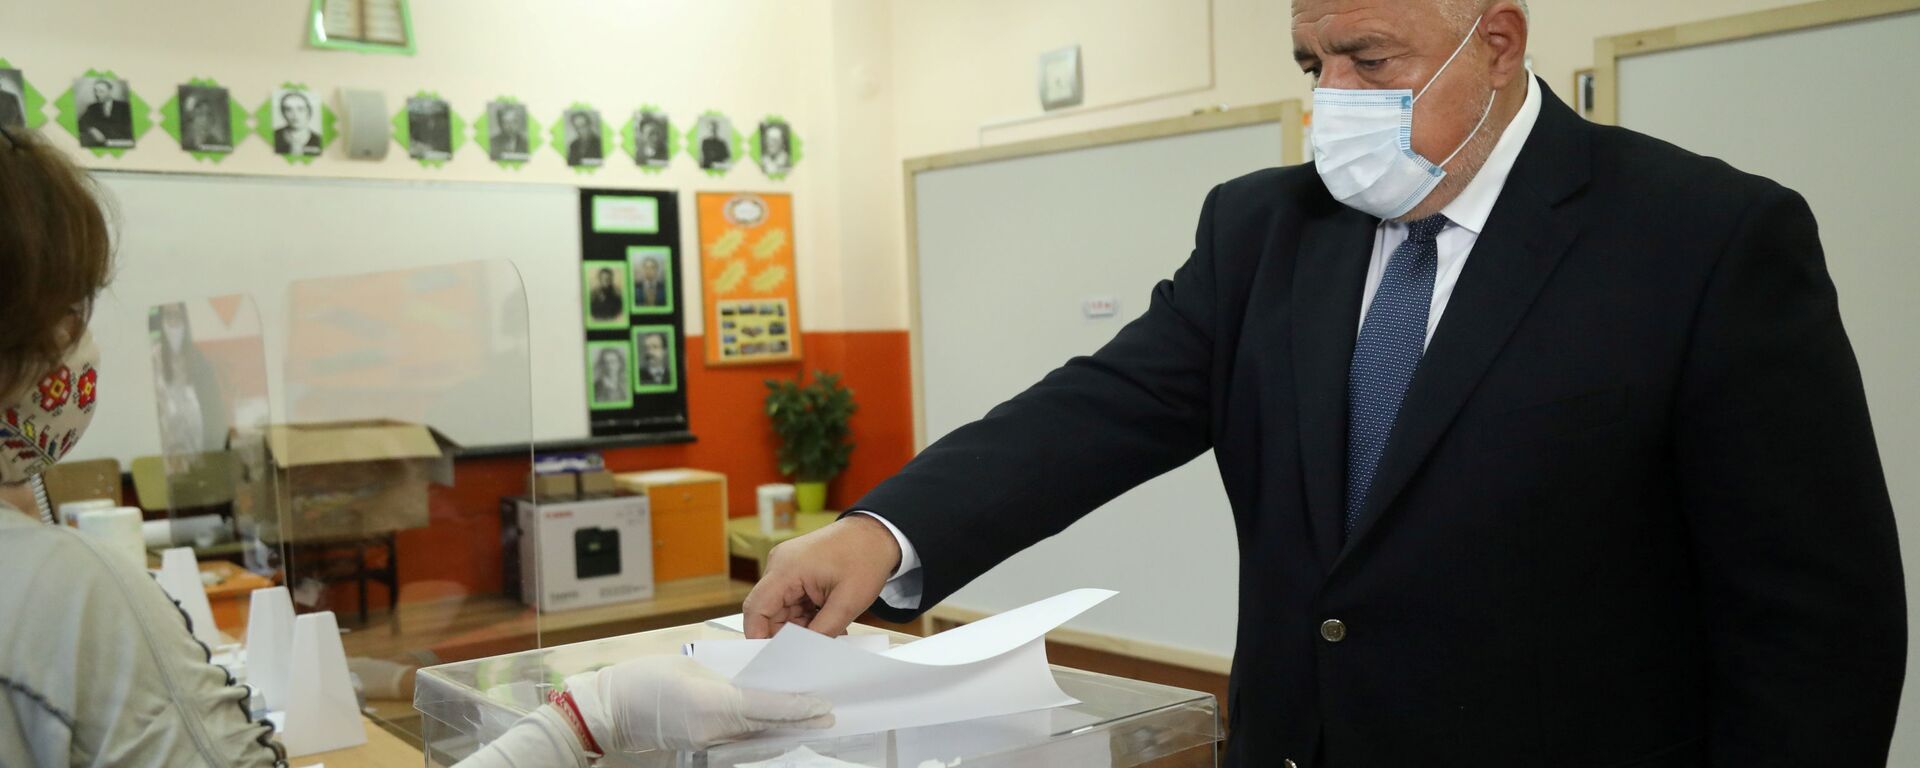 Бугарски премијер Бојко Борисов гласа на парламентарним изборима у Софији. - Sputnik Србија, 1920, 07.04.2021